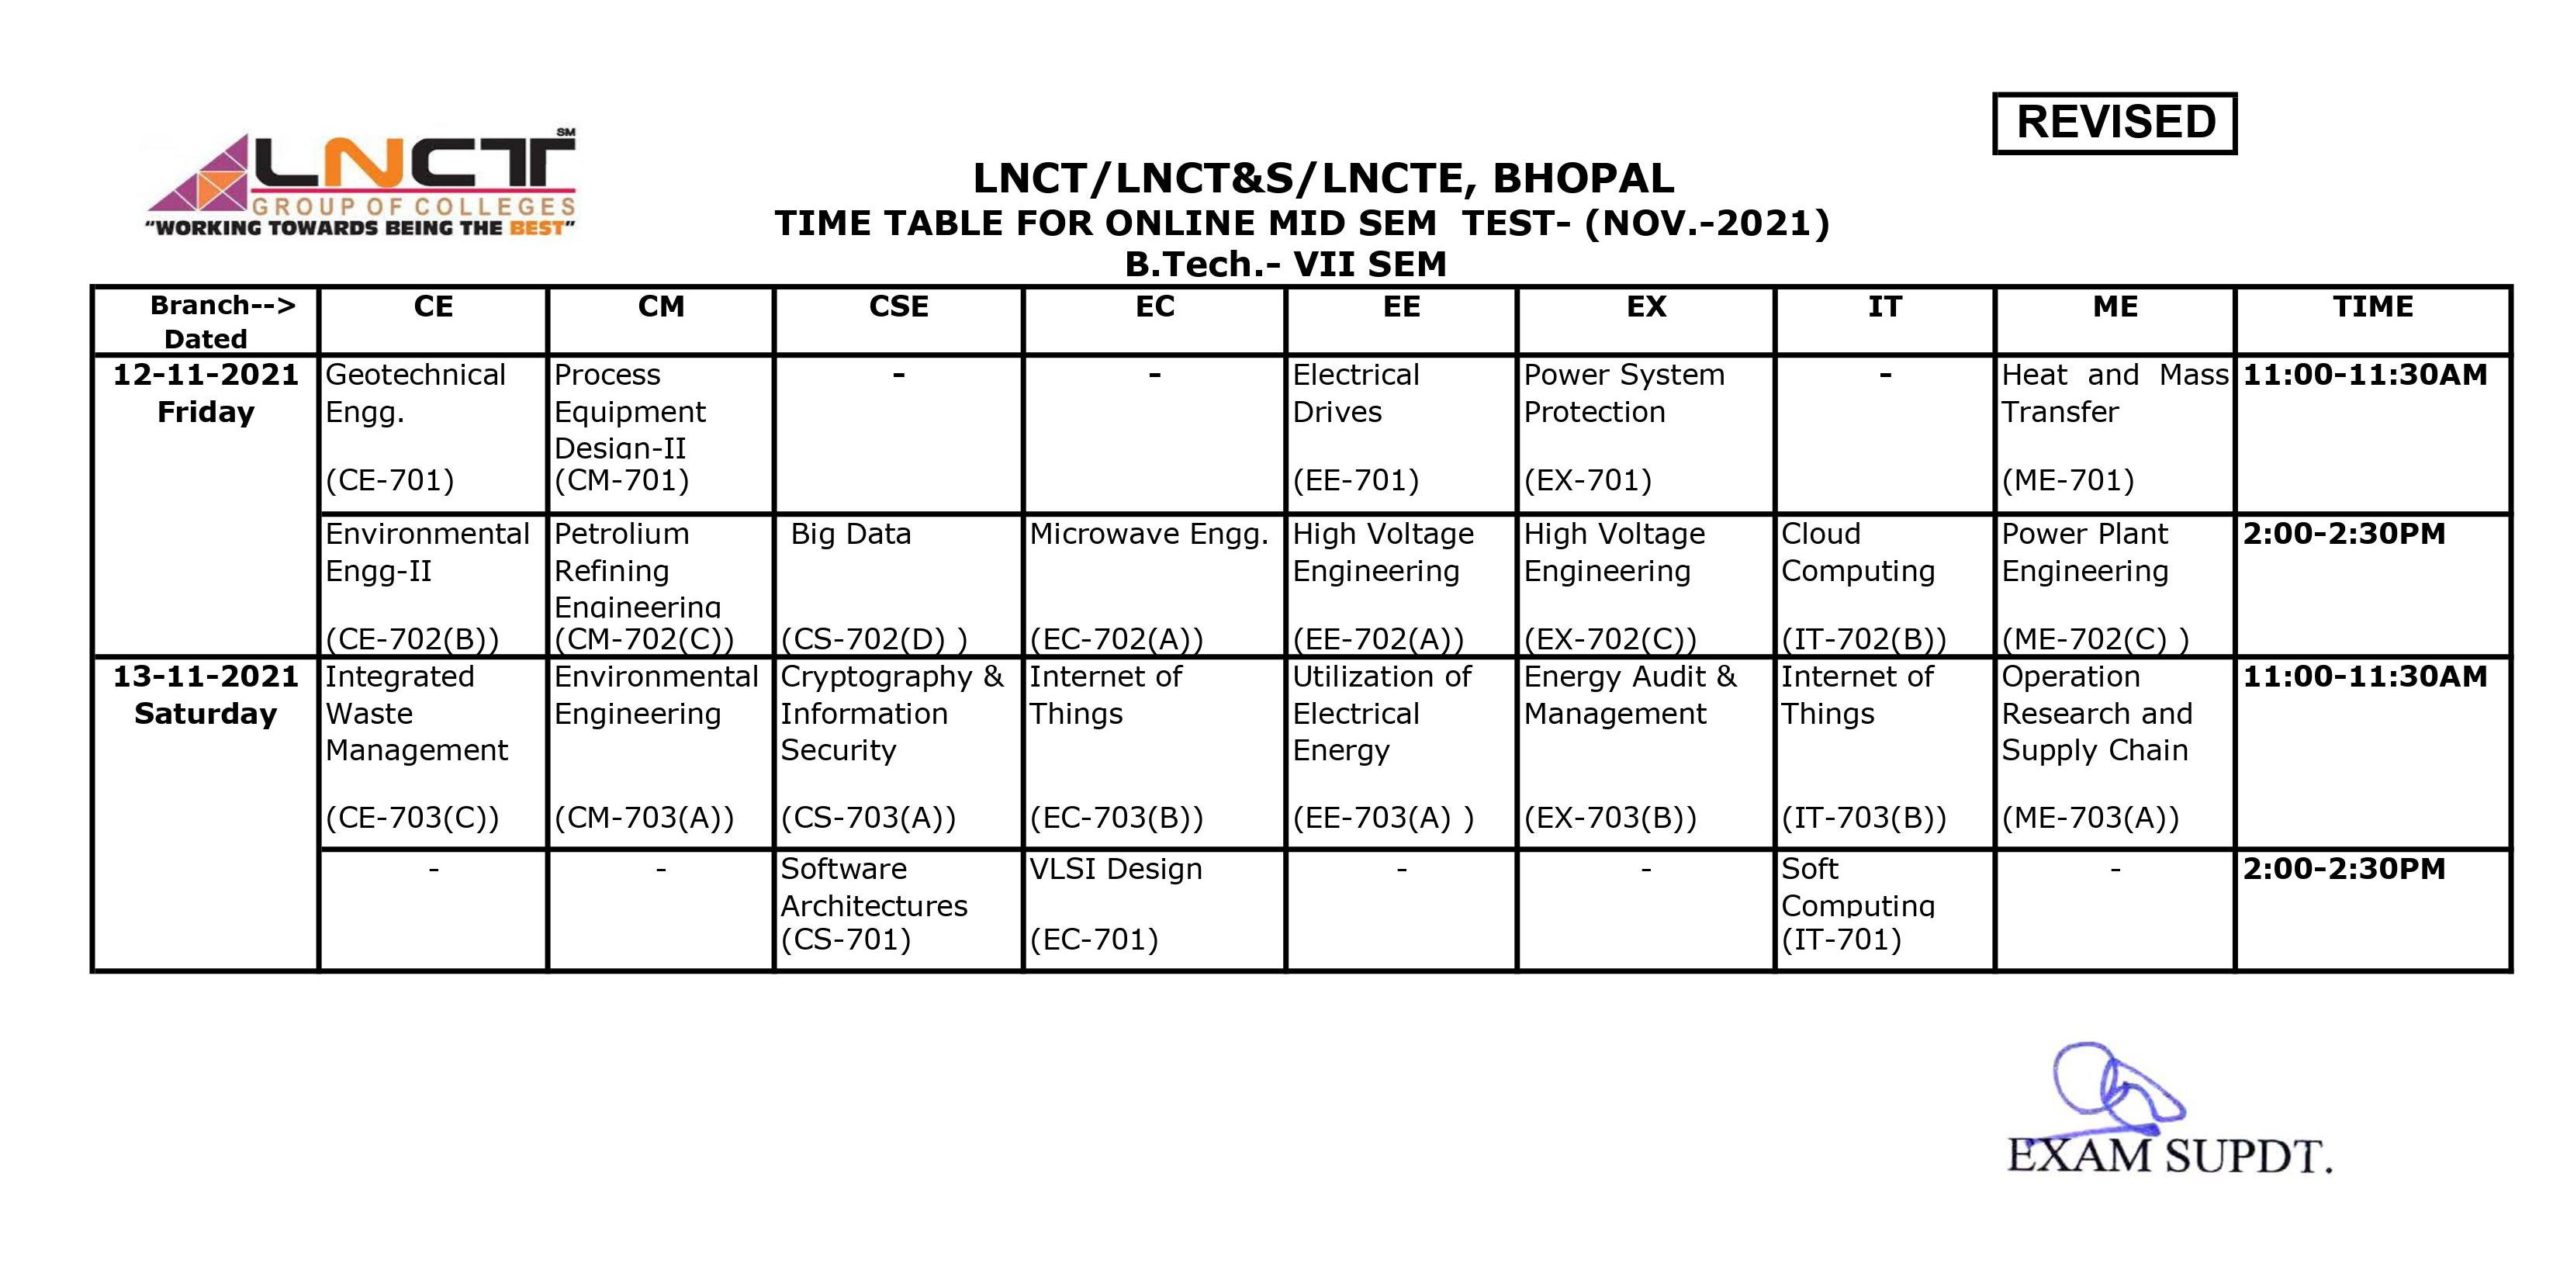 TIME TABLE FOR ONLINE MID SEM TEST (NOV-2021), B. TECH VII SEM 3